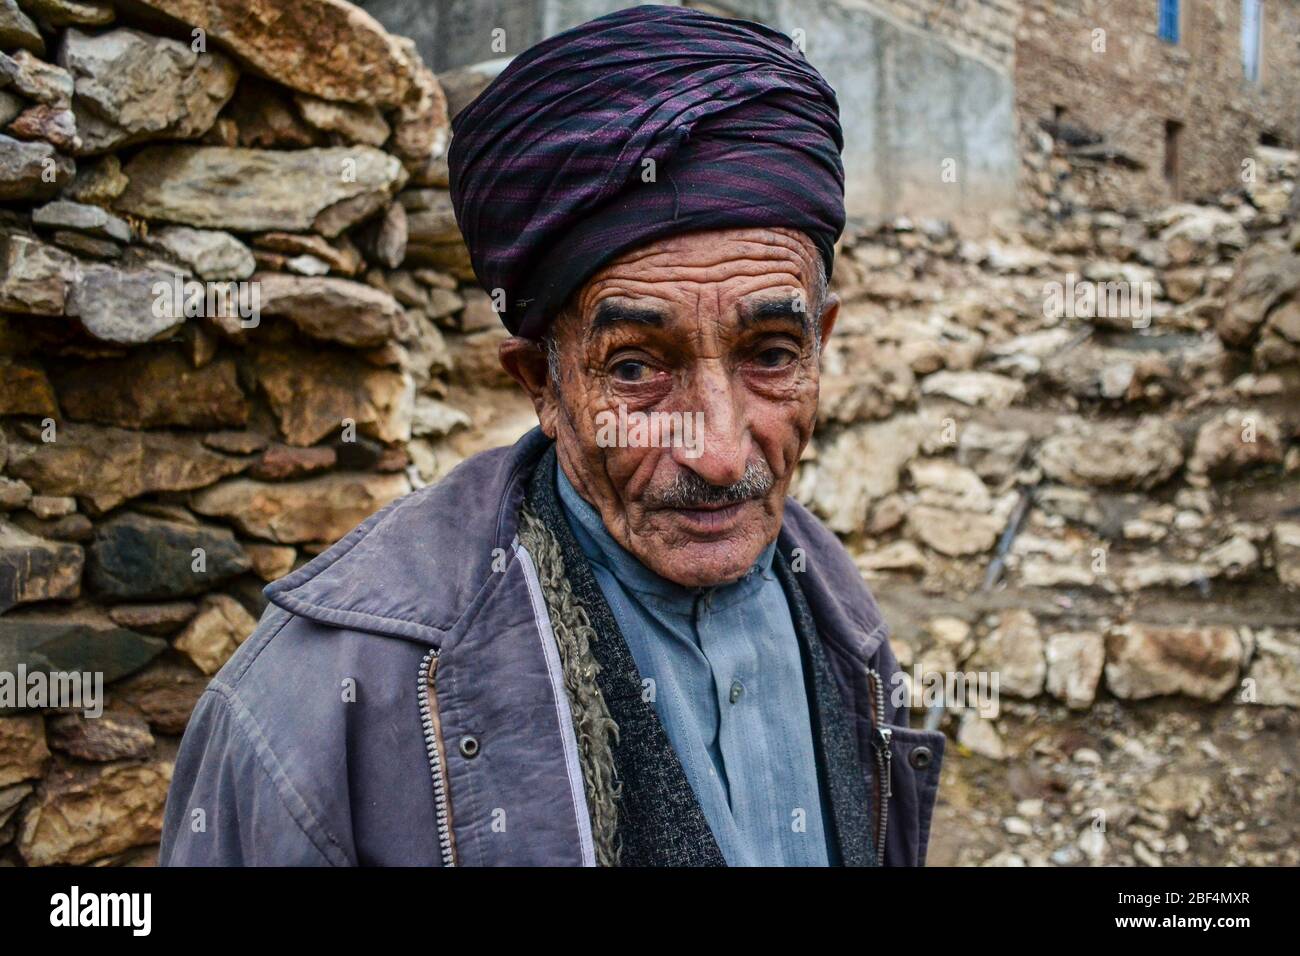 Palangan, iranisches Kurdistan - 15. November 2013: Porträt eines alten kurdischen Mannes mit einem Gesicht voller Falten Stockfoto